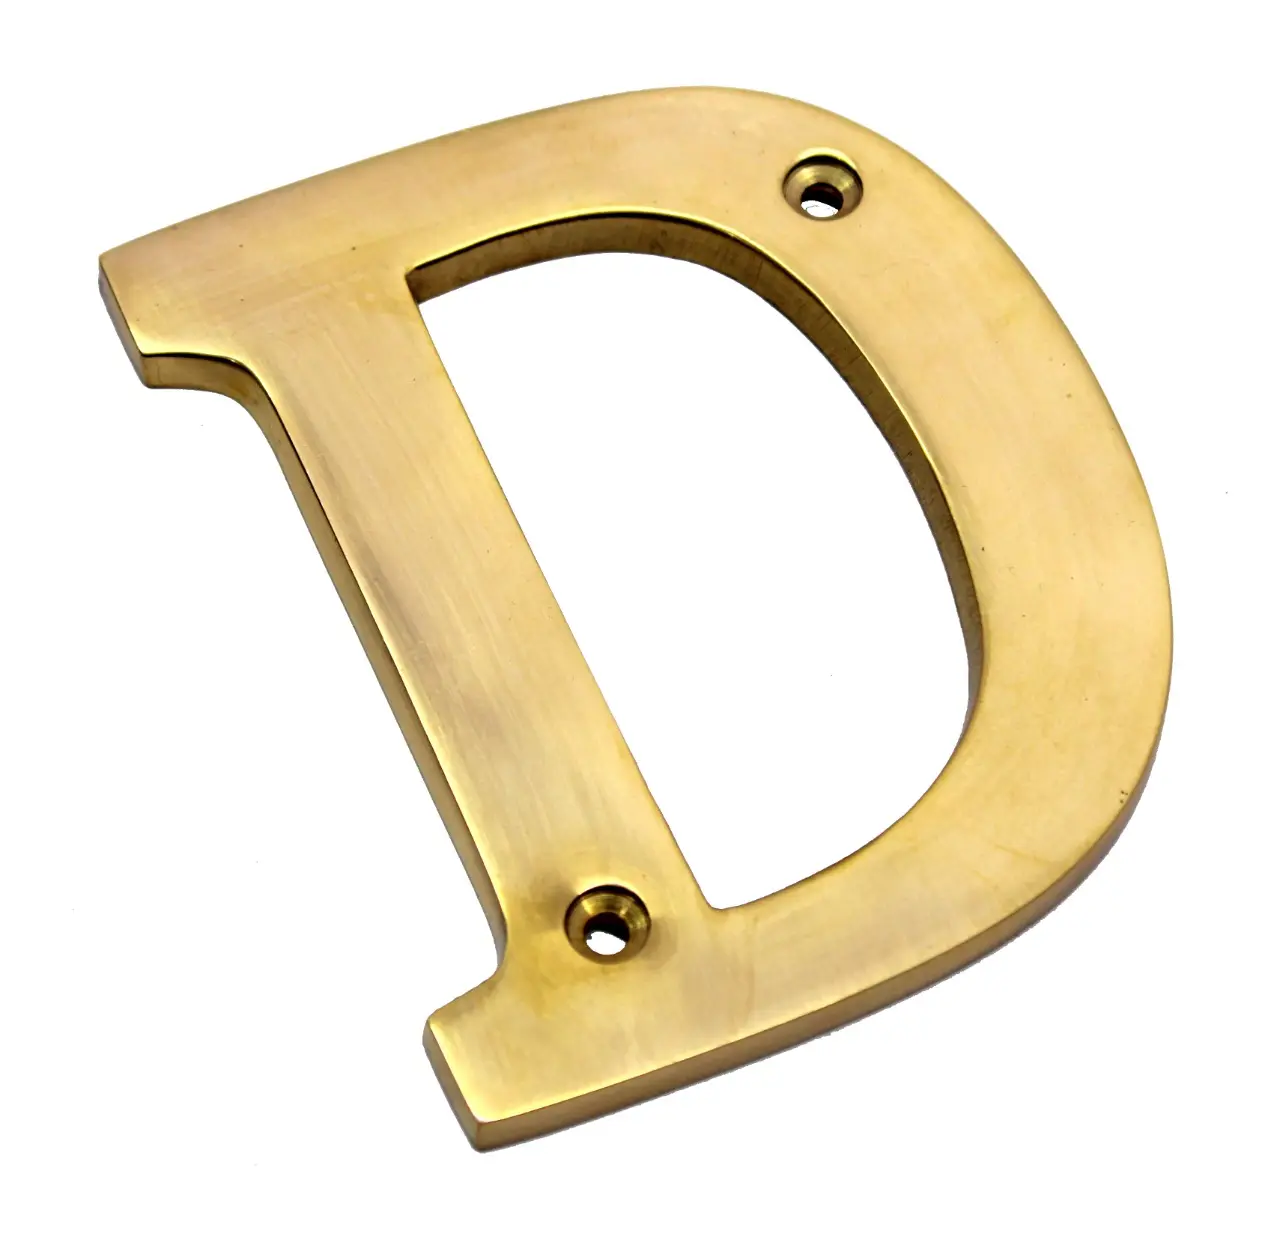 Alfabeto metálico Logotipo del alfabeto metálico Impresión Aluminio y latón Imagen de fondo Pared Alfabeto numérico metálico